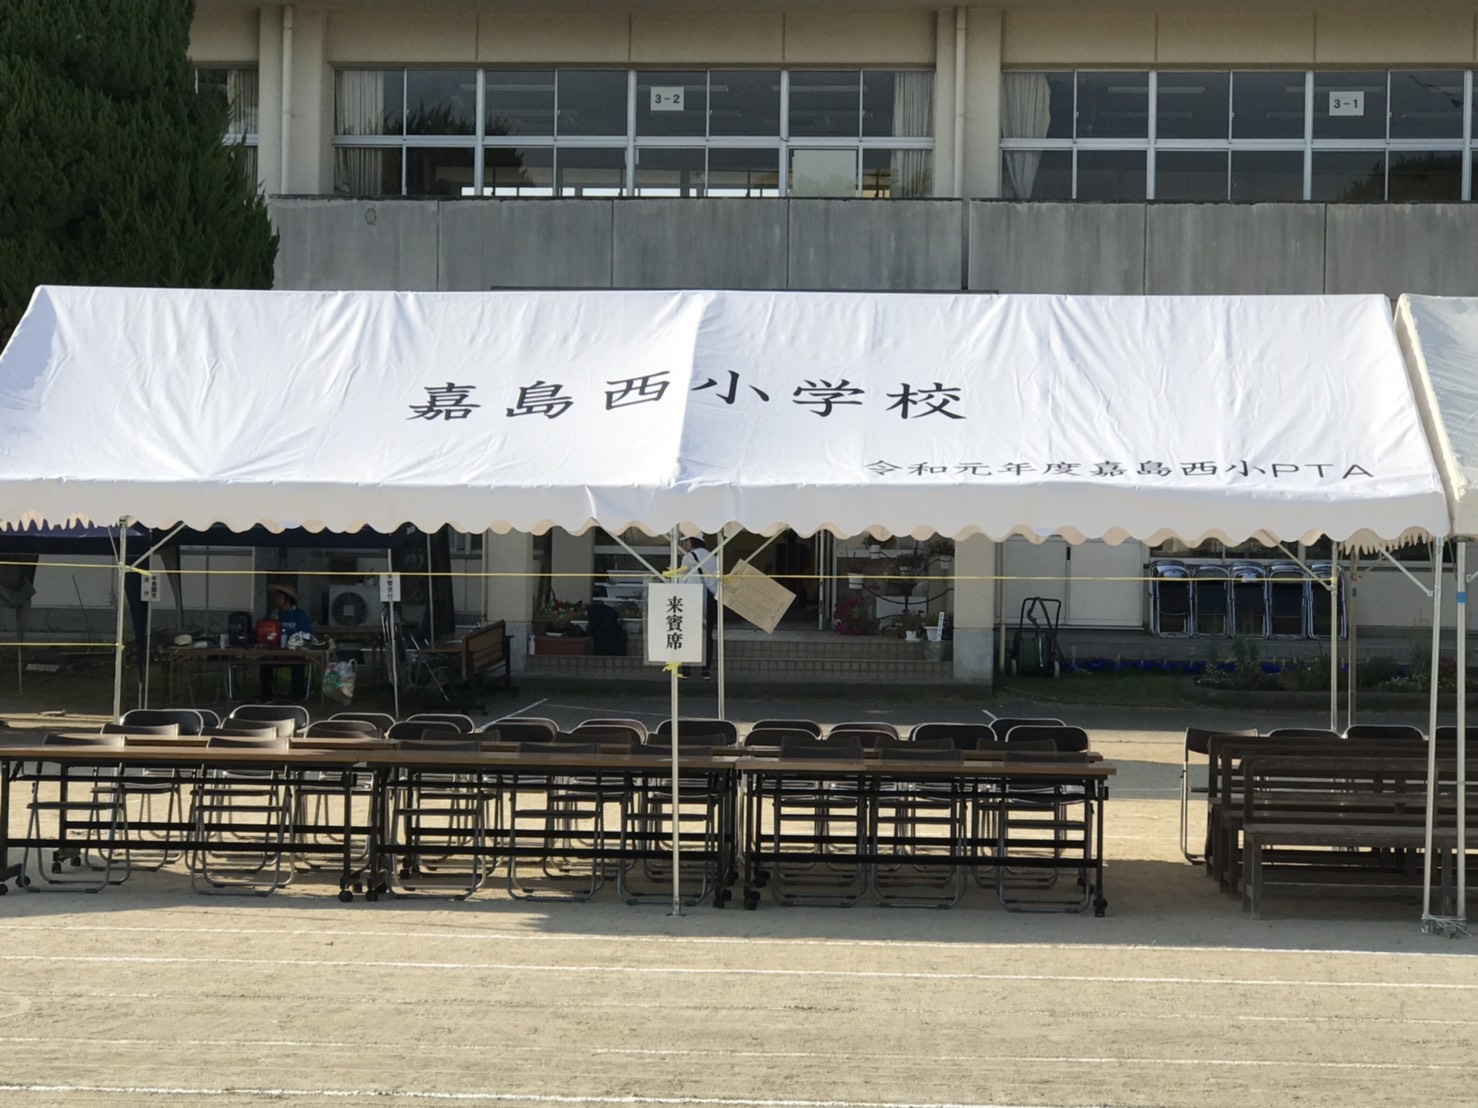 事例no 9 運動会テント文字入れ イベントテントのことならテントマーケット